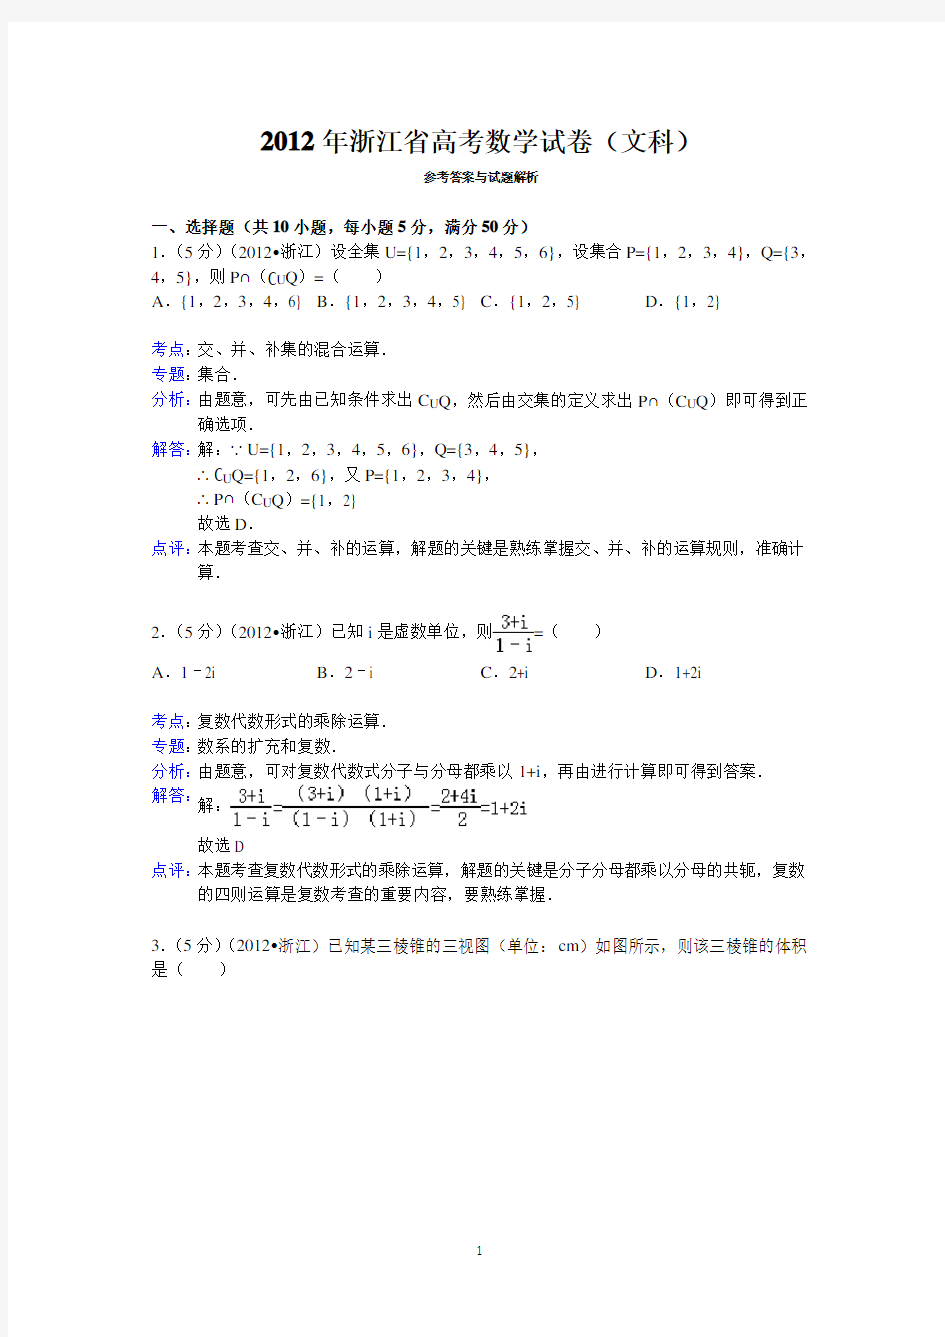 (完整版)2012年浙江省高考数学试卷(文科)答案与解析